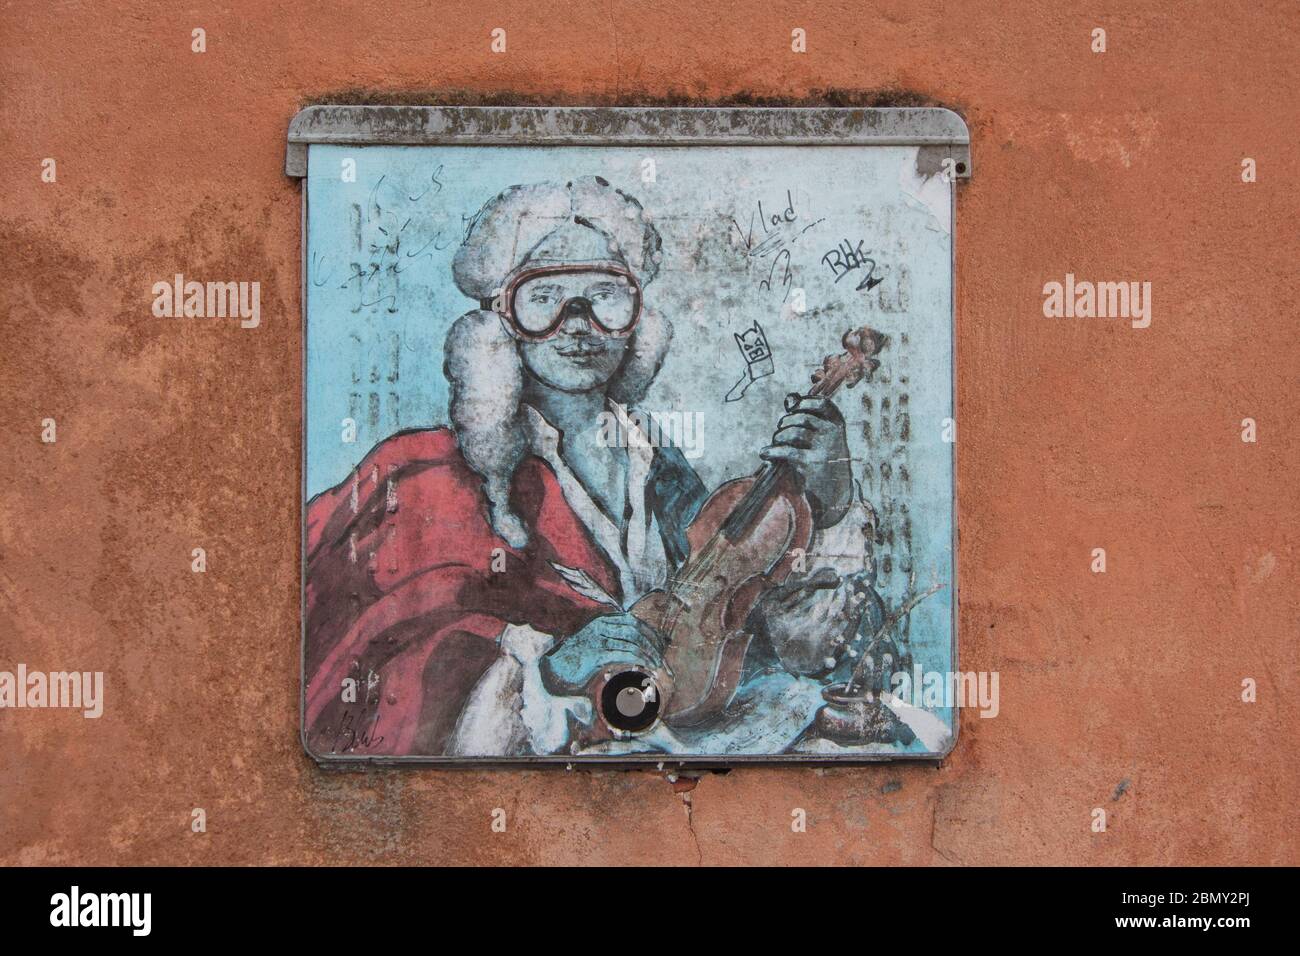 VENEZIA, ITALIA - 08 MAGGIO: Un graffito di Blu è visto su una parete di un edificio. Foto Stock